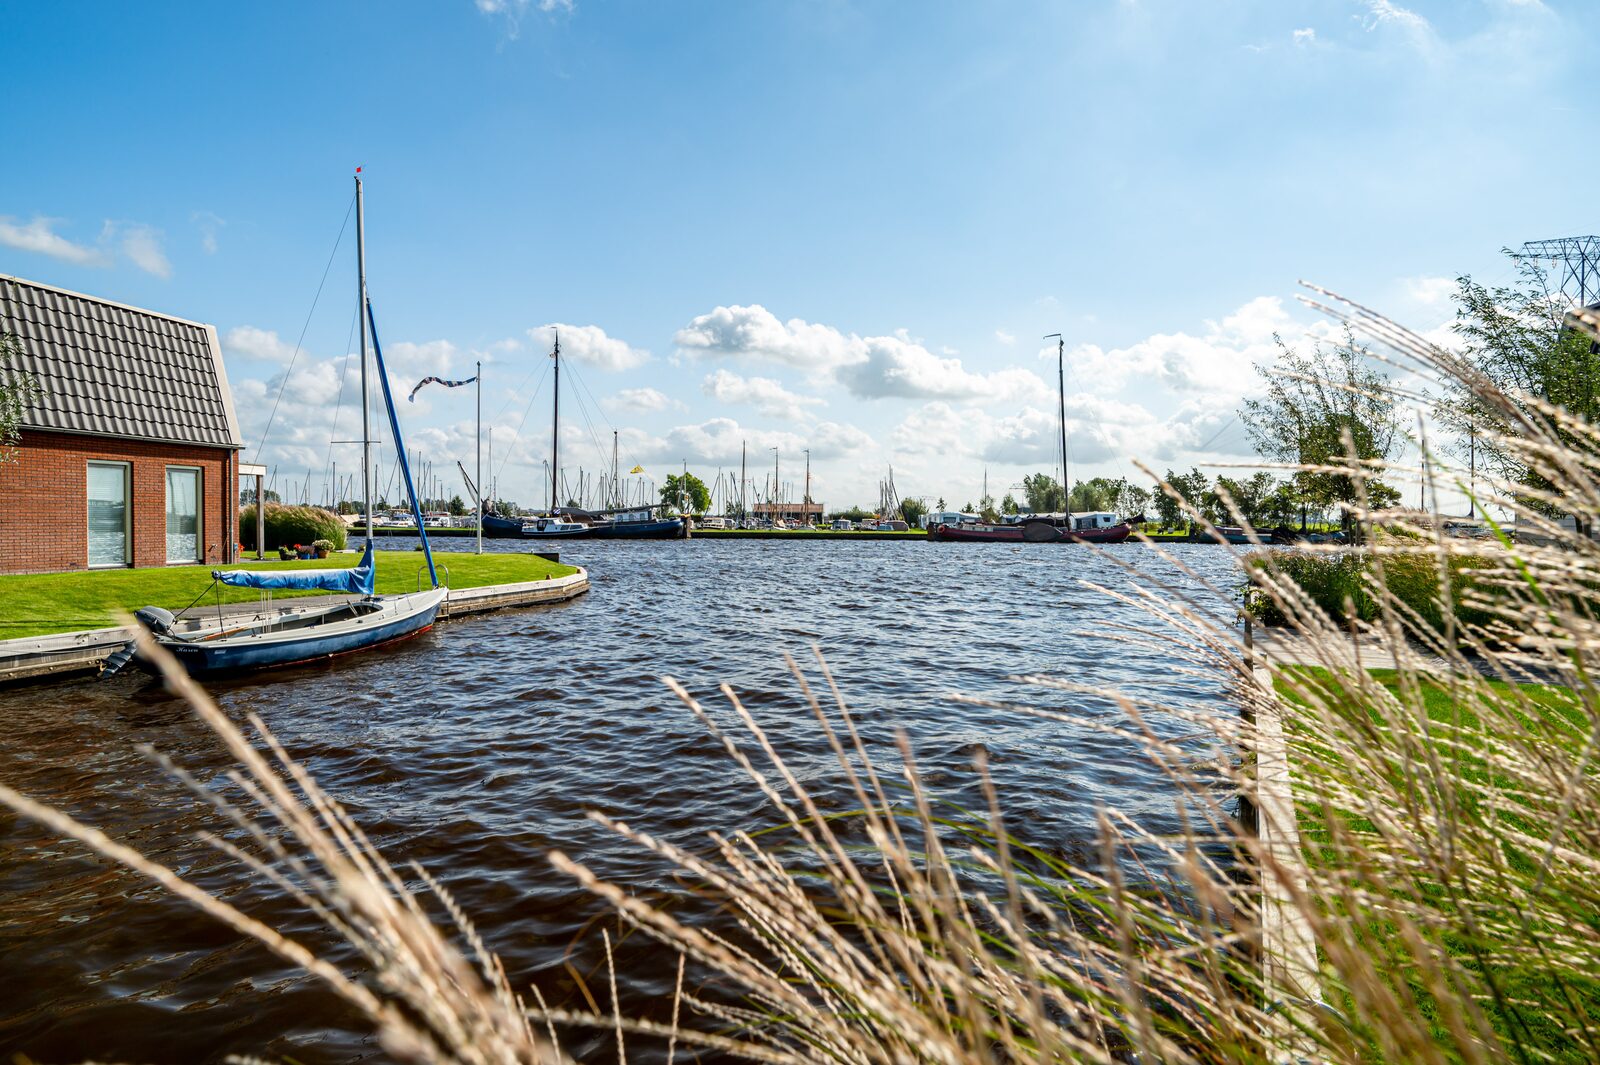 Maak kennis met ons vakantiepark in Friesland